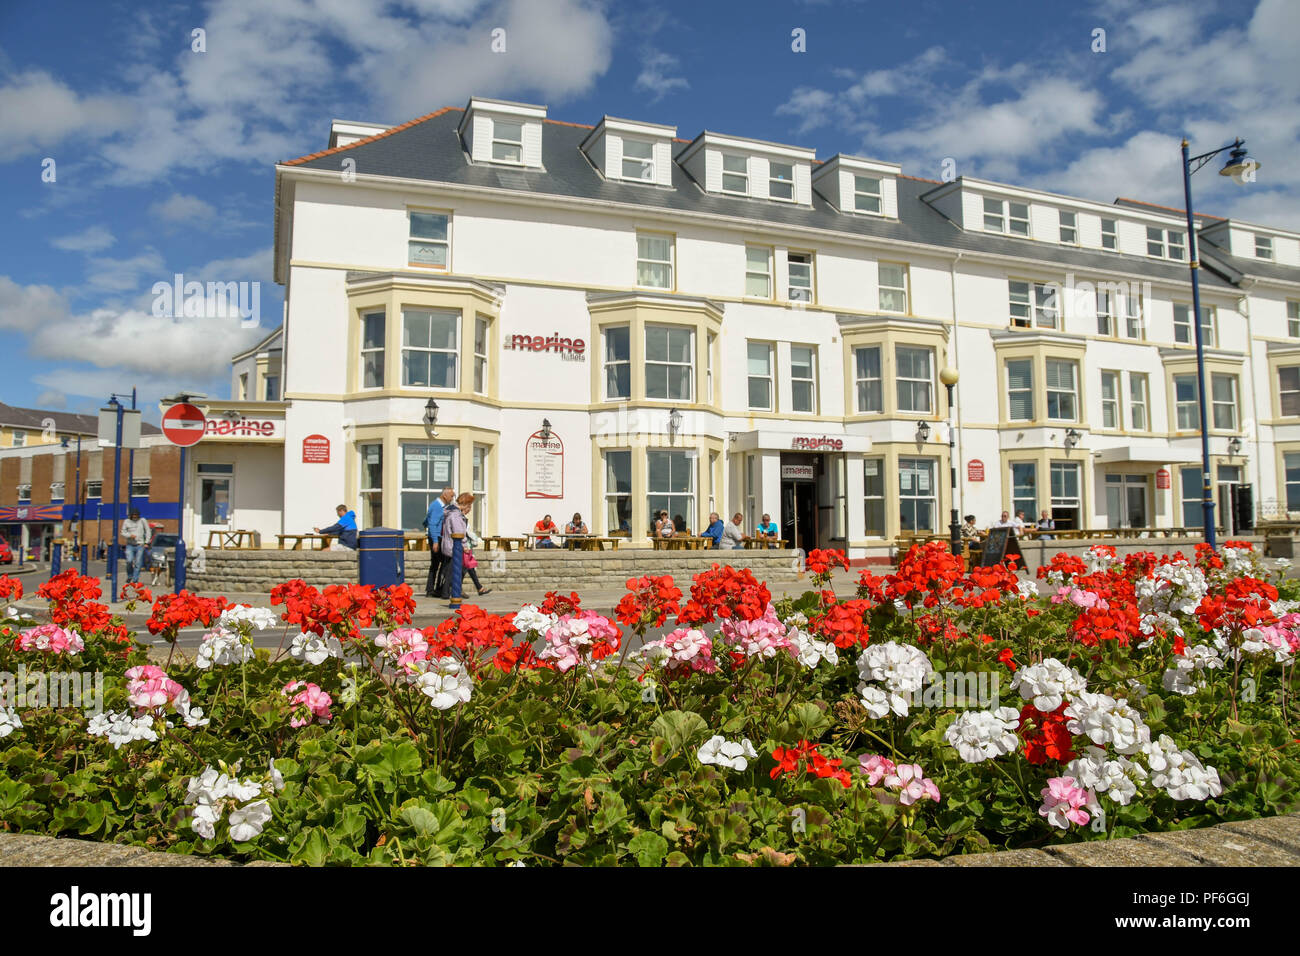 La Marina Appartamenti sul lungomare di Porthcawl, Galles. In primo piano è un letto floreale con fiori di colore rosso. Foto Stock